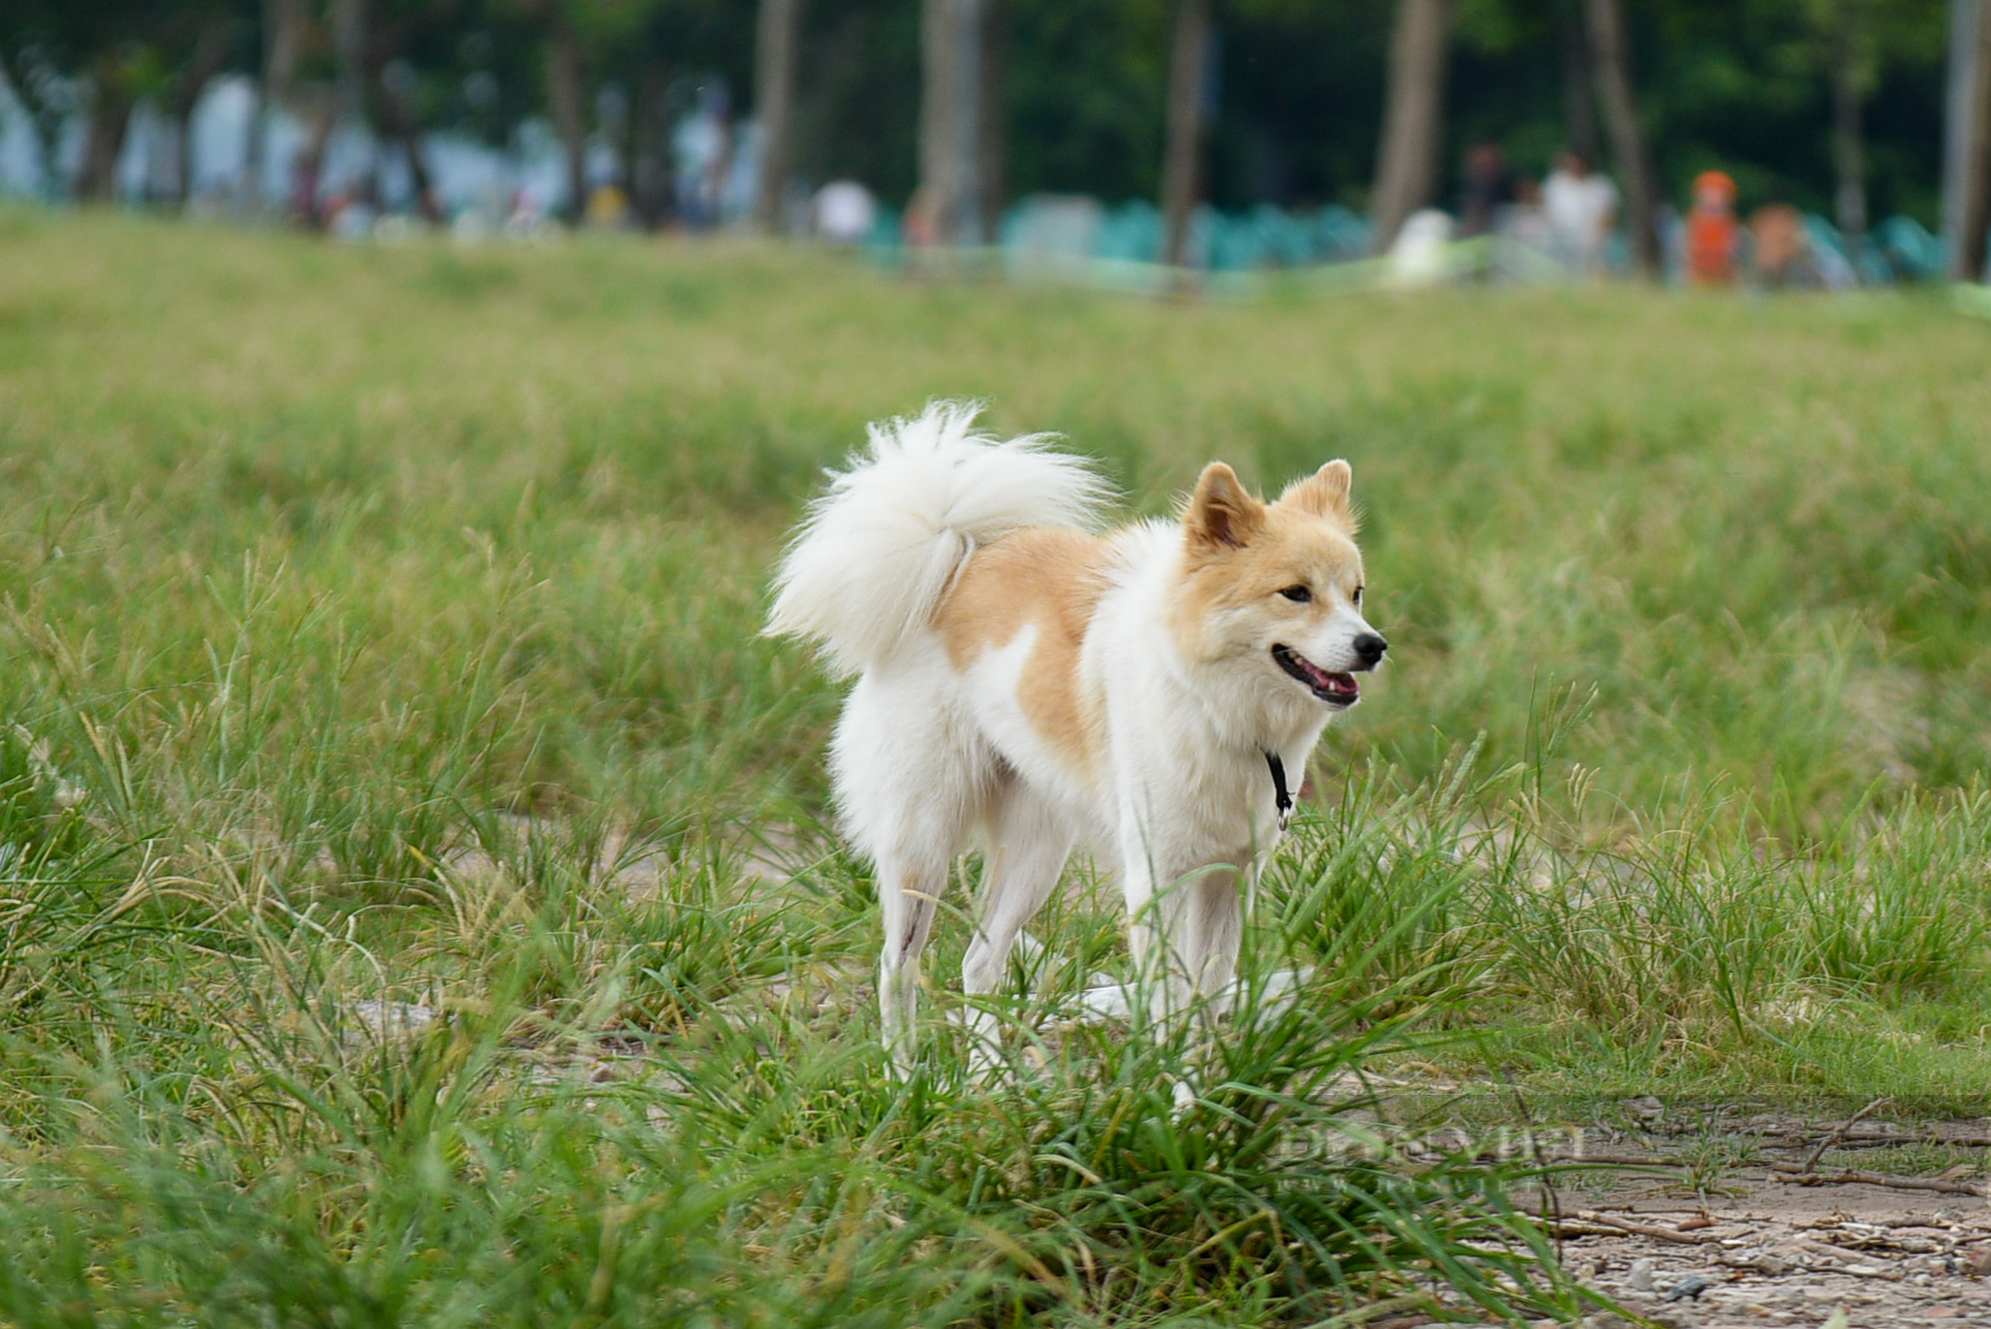 Công viên, bãi cỏ tại Hà Nội xuất hiện đầy rẫy chó không rọ mõm, dây xích được thả rông - Ảnh 3.